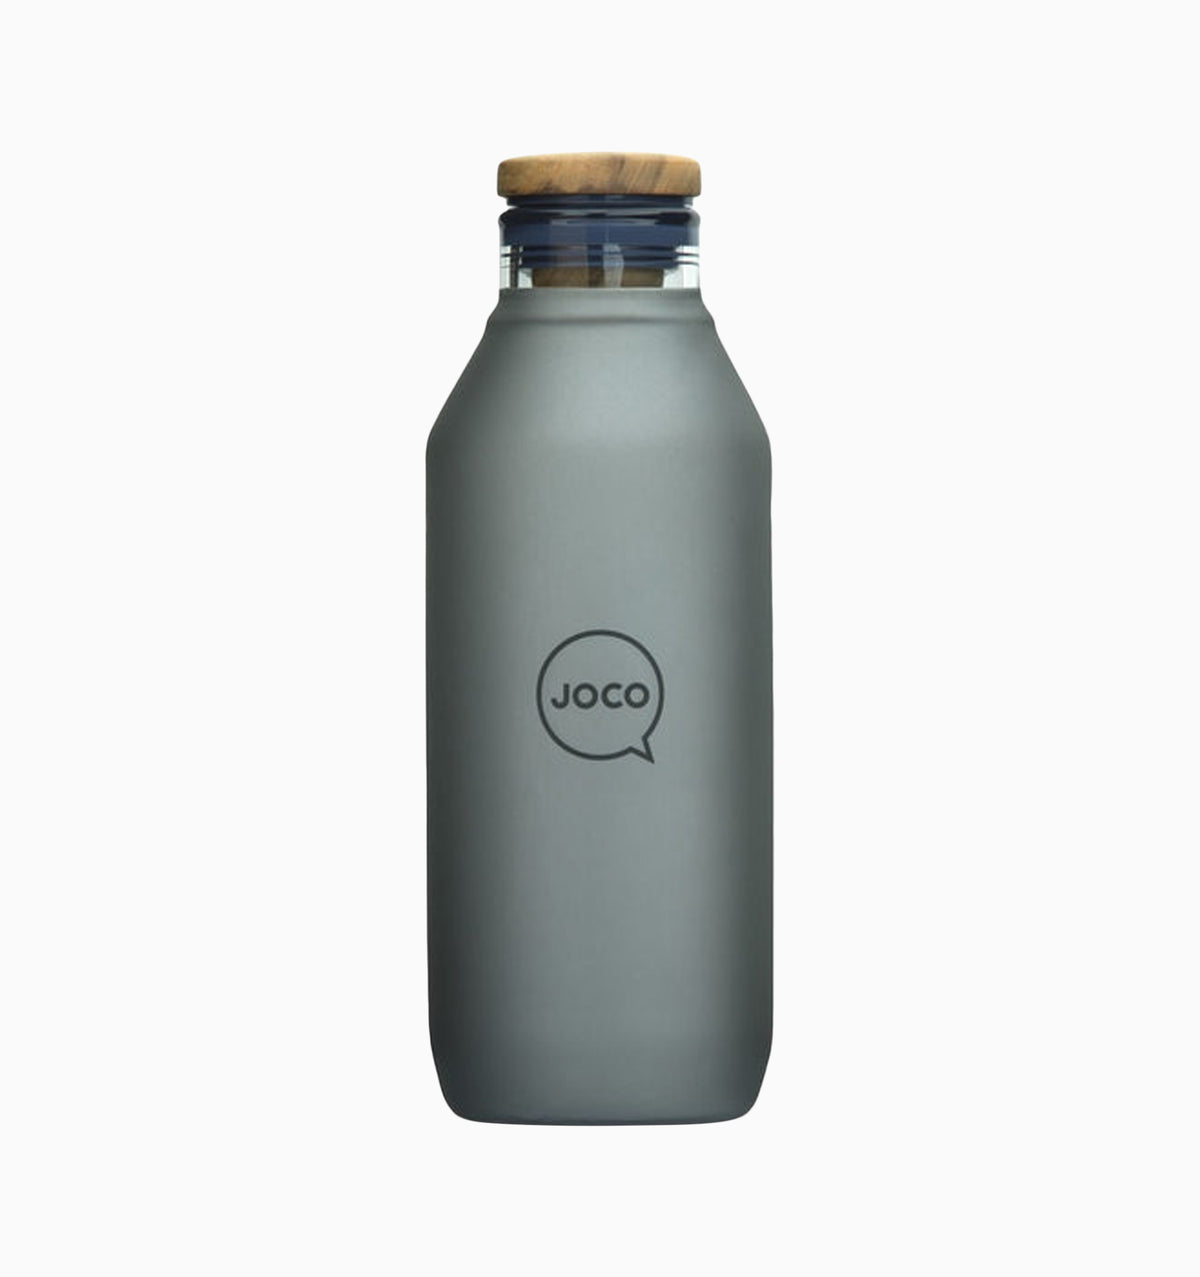 Joco Plastic Free Water Bottle 600ml (20oz) - Black